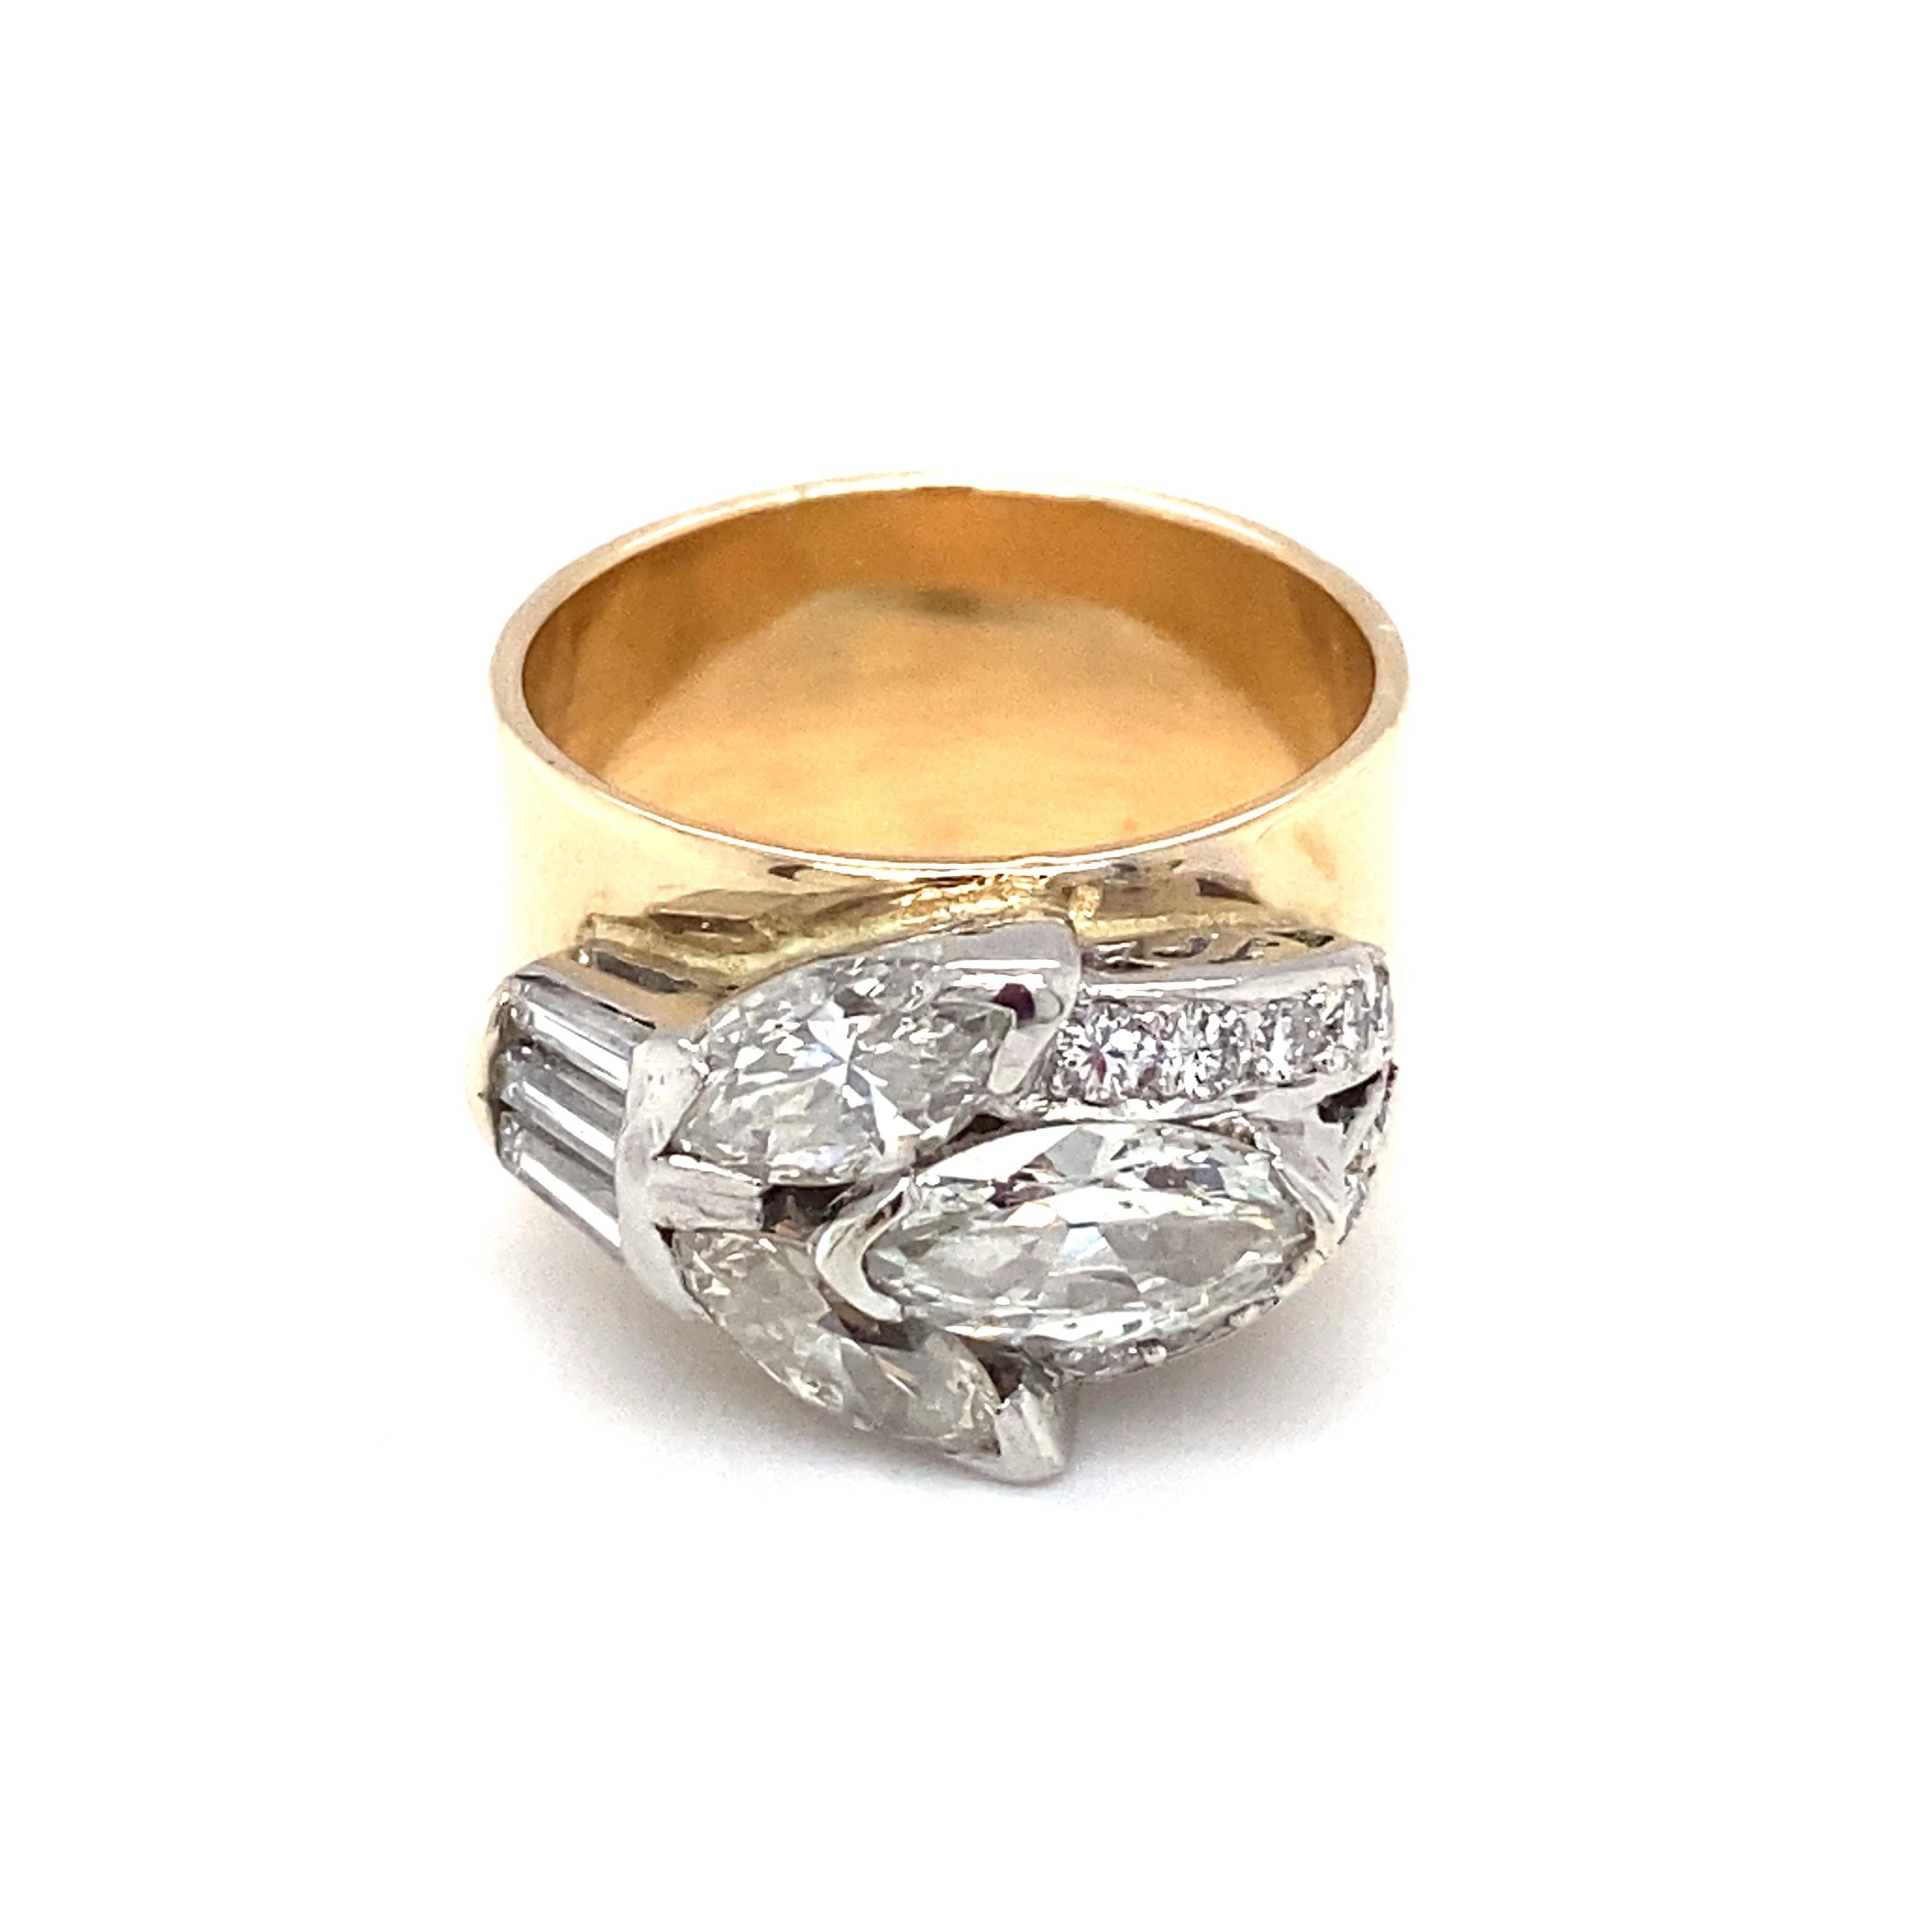 Circa 1920s 2.32 Carat Diamond Ring in 14 Karat Two Tone Gold 1